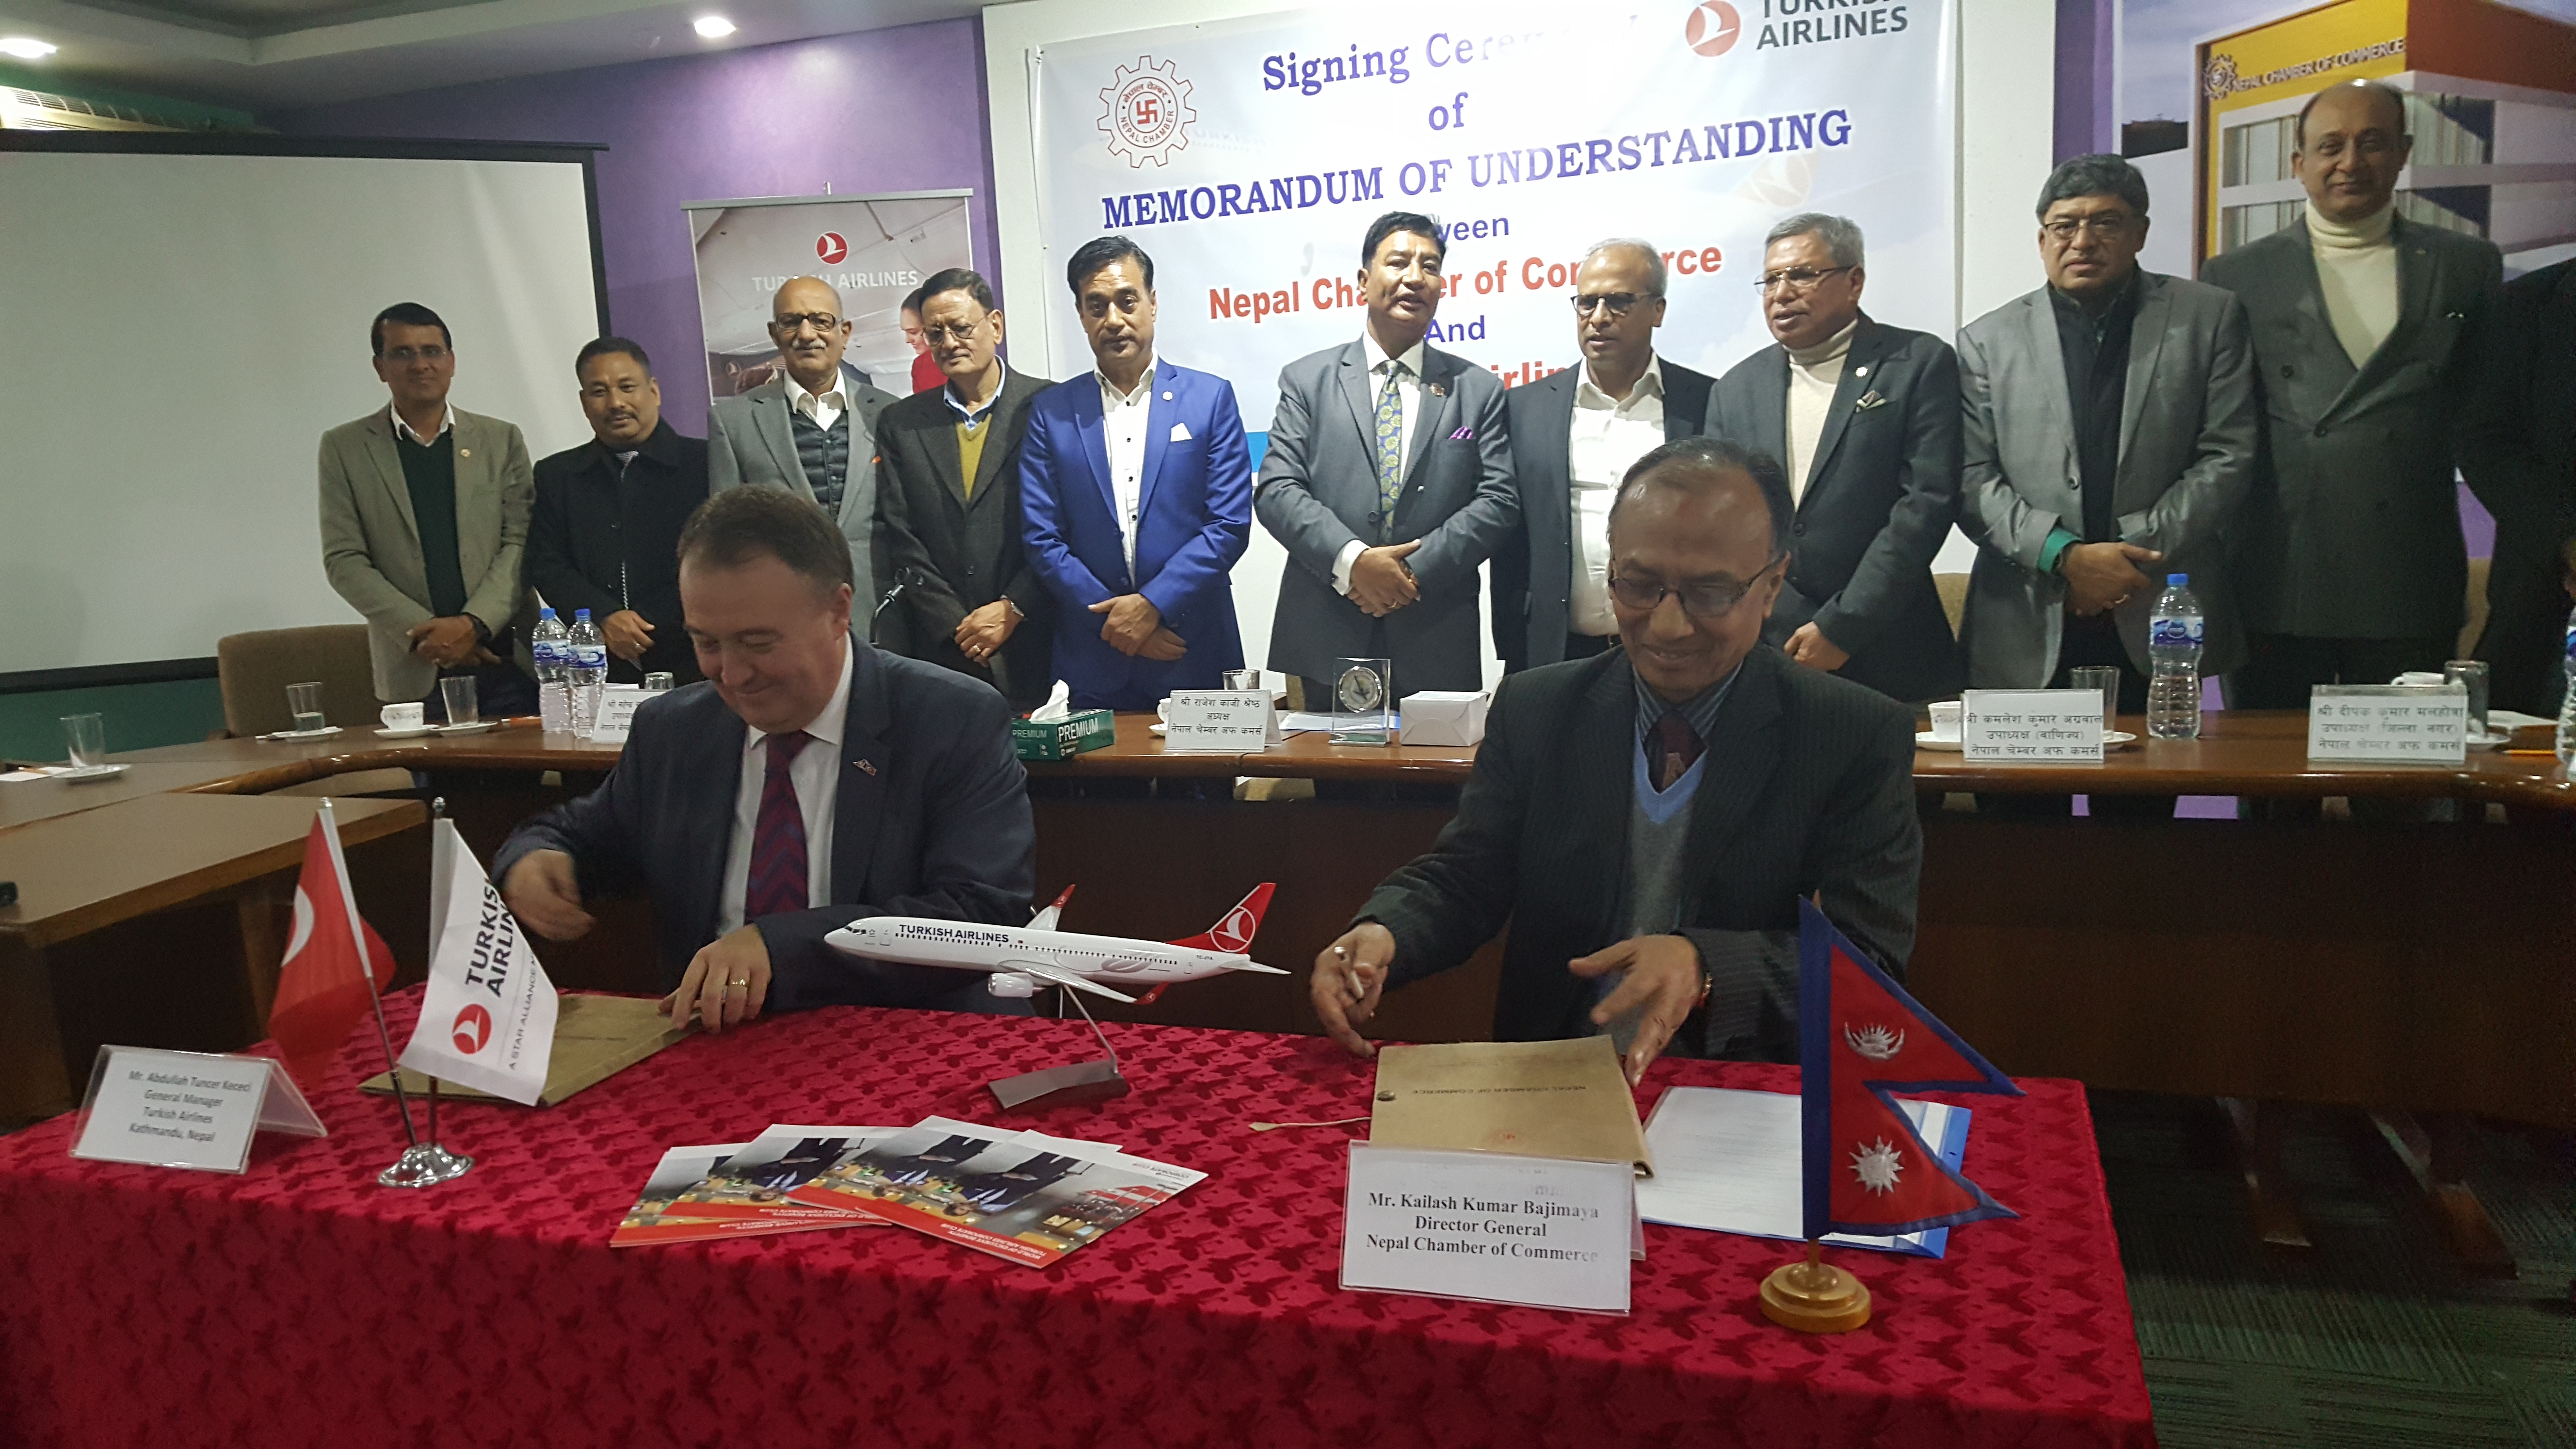 नेपाल चेम्बर अफ कमर्स र टर्कीस एयरलाइन्सबीच समझदारी पत्रमा हस्ताक्षर